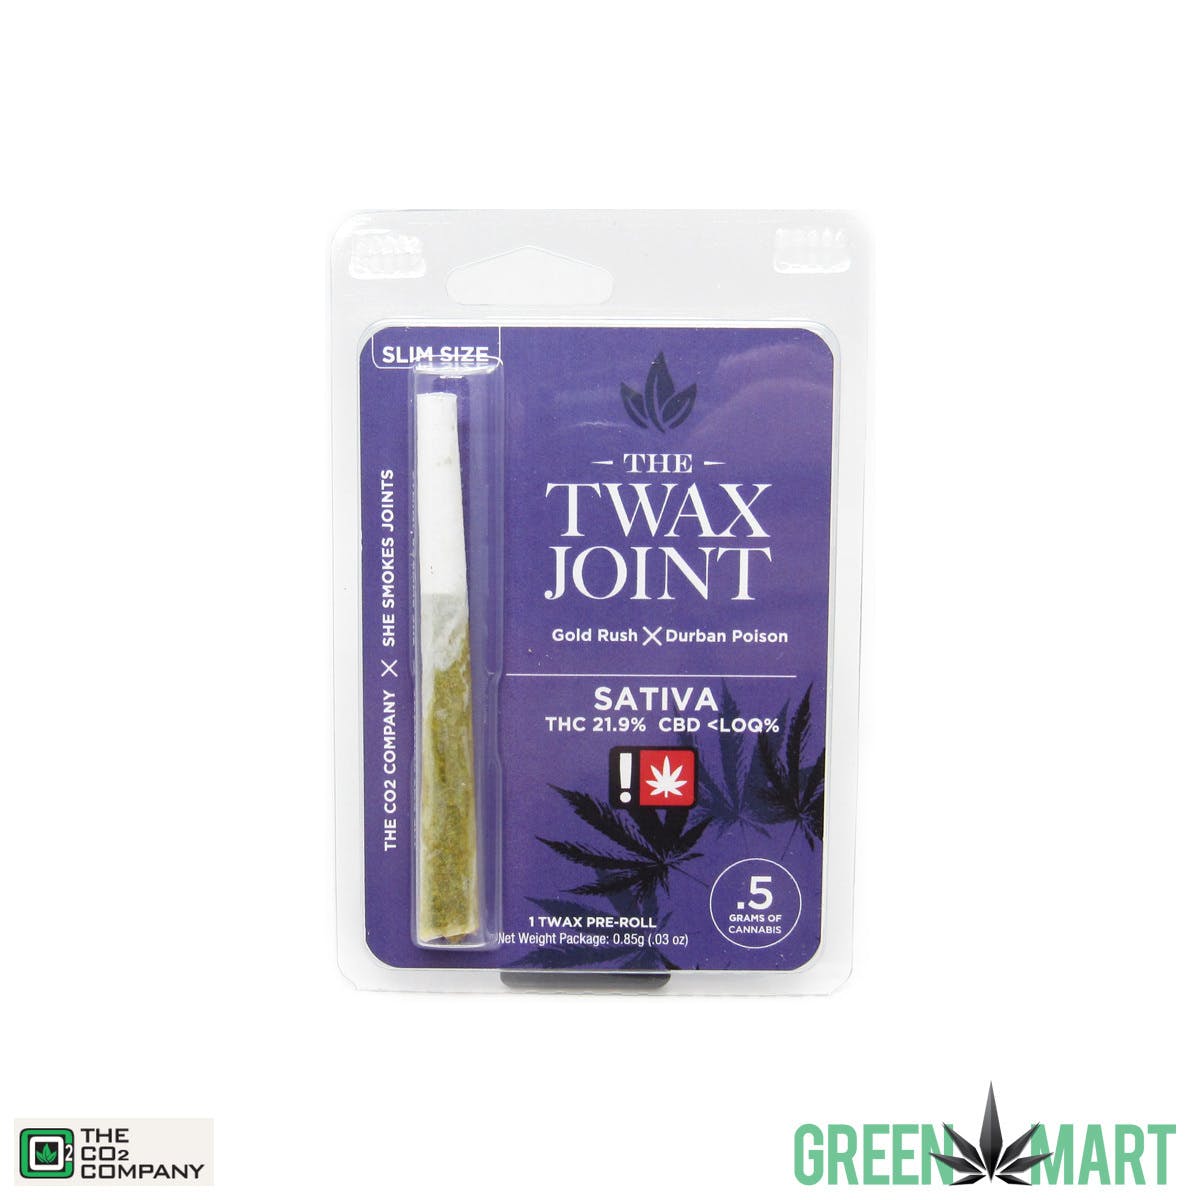 Twax joints (Sativa) Gold Rush x Durban Poison